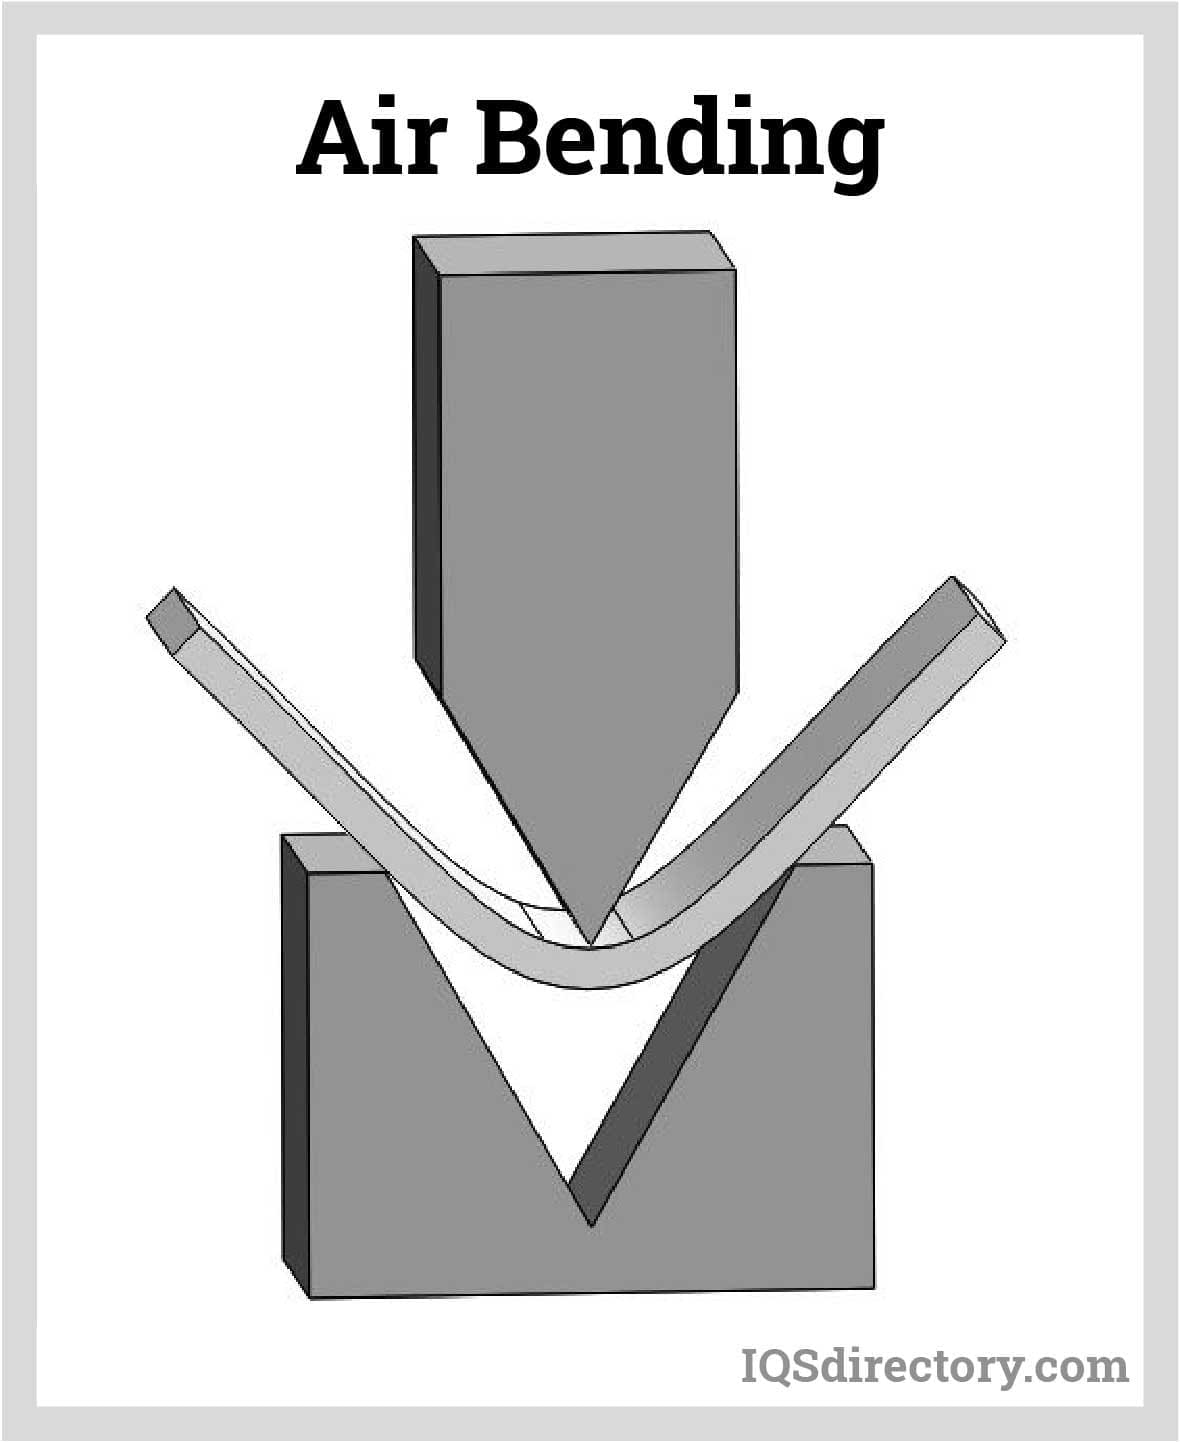 Air Bending